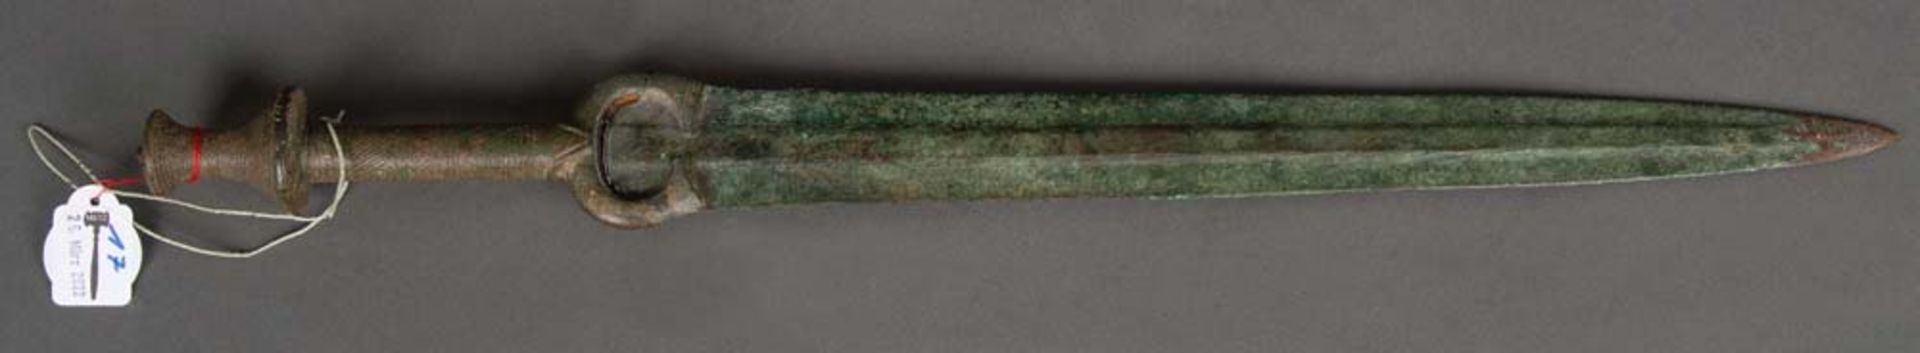 Kurzschwert. Elamit Königreich, Haft Tappen, Iran, Späte Bronzezeit. Bronze geschmiedet, L=57 cm.